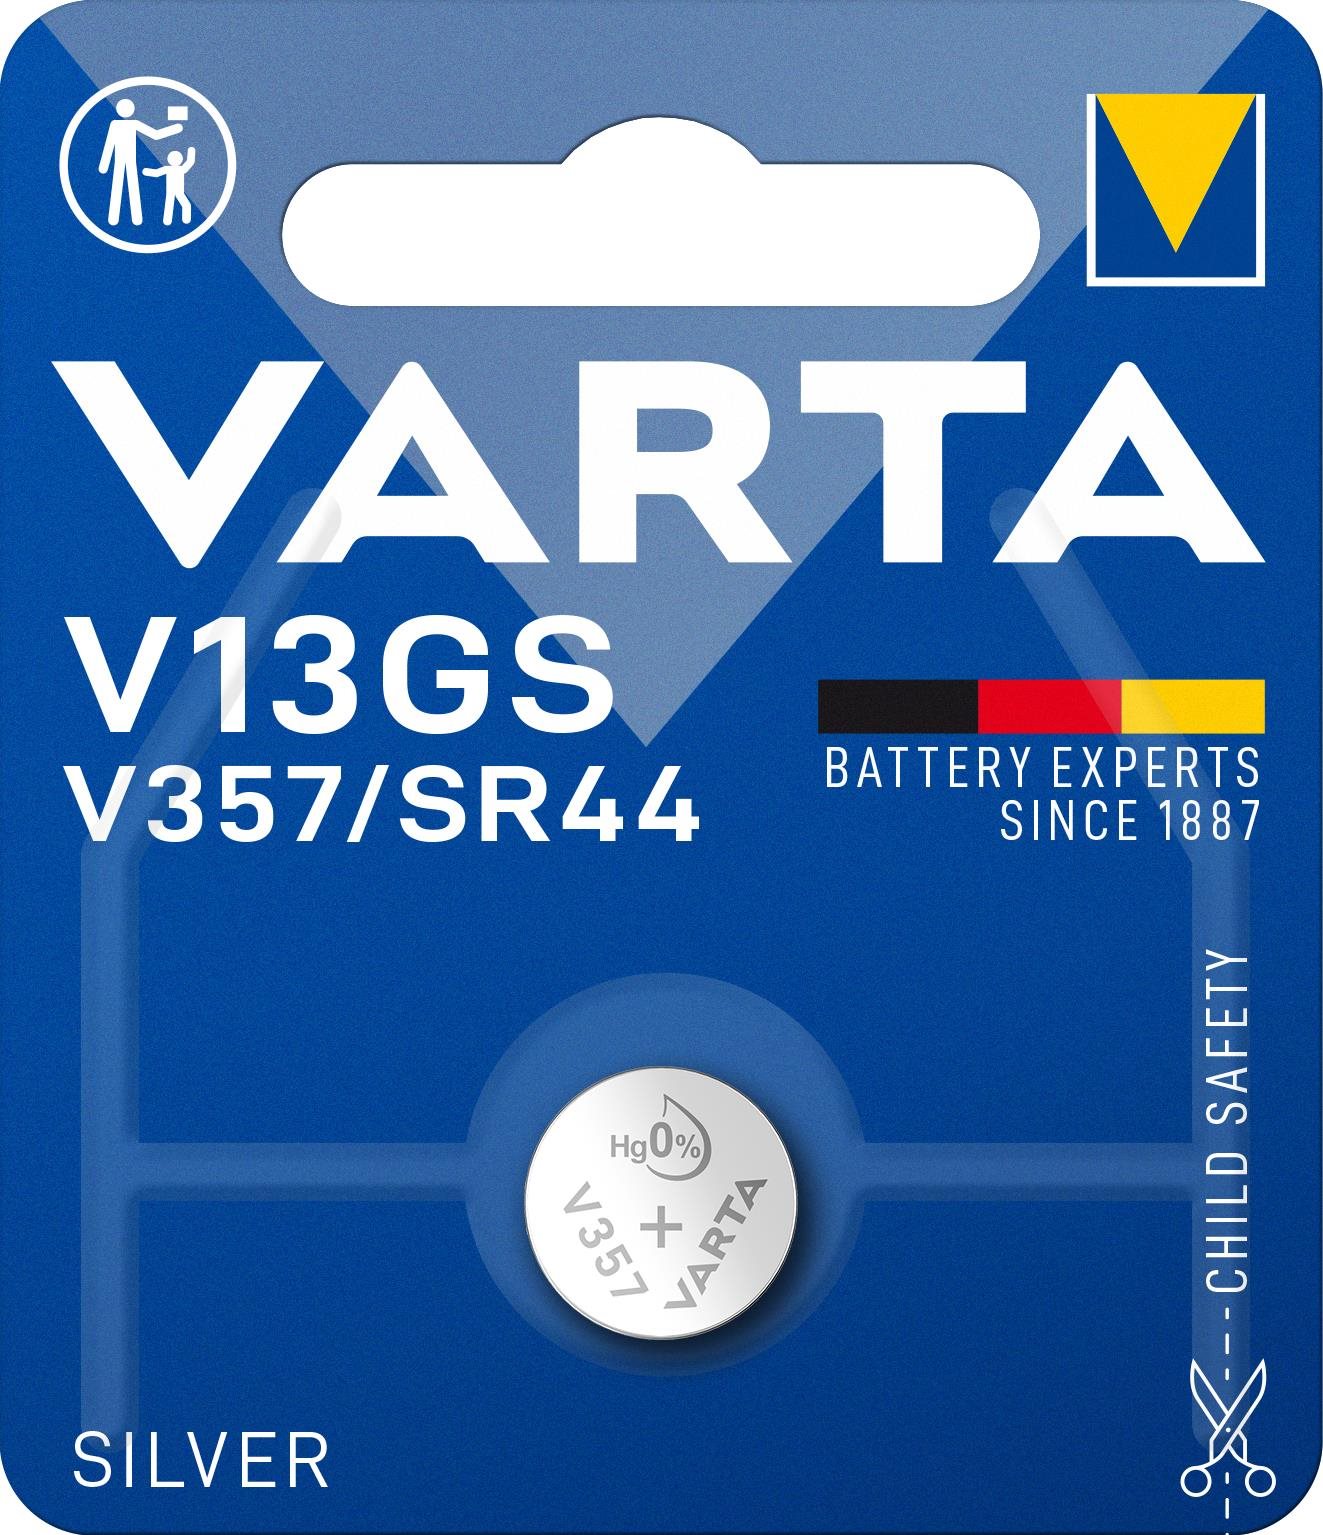 VARTA Speciális ezüst-oxid elem V13GS/V357/SR44 1 db